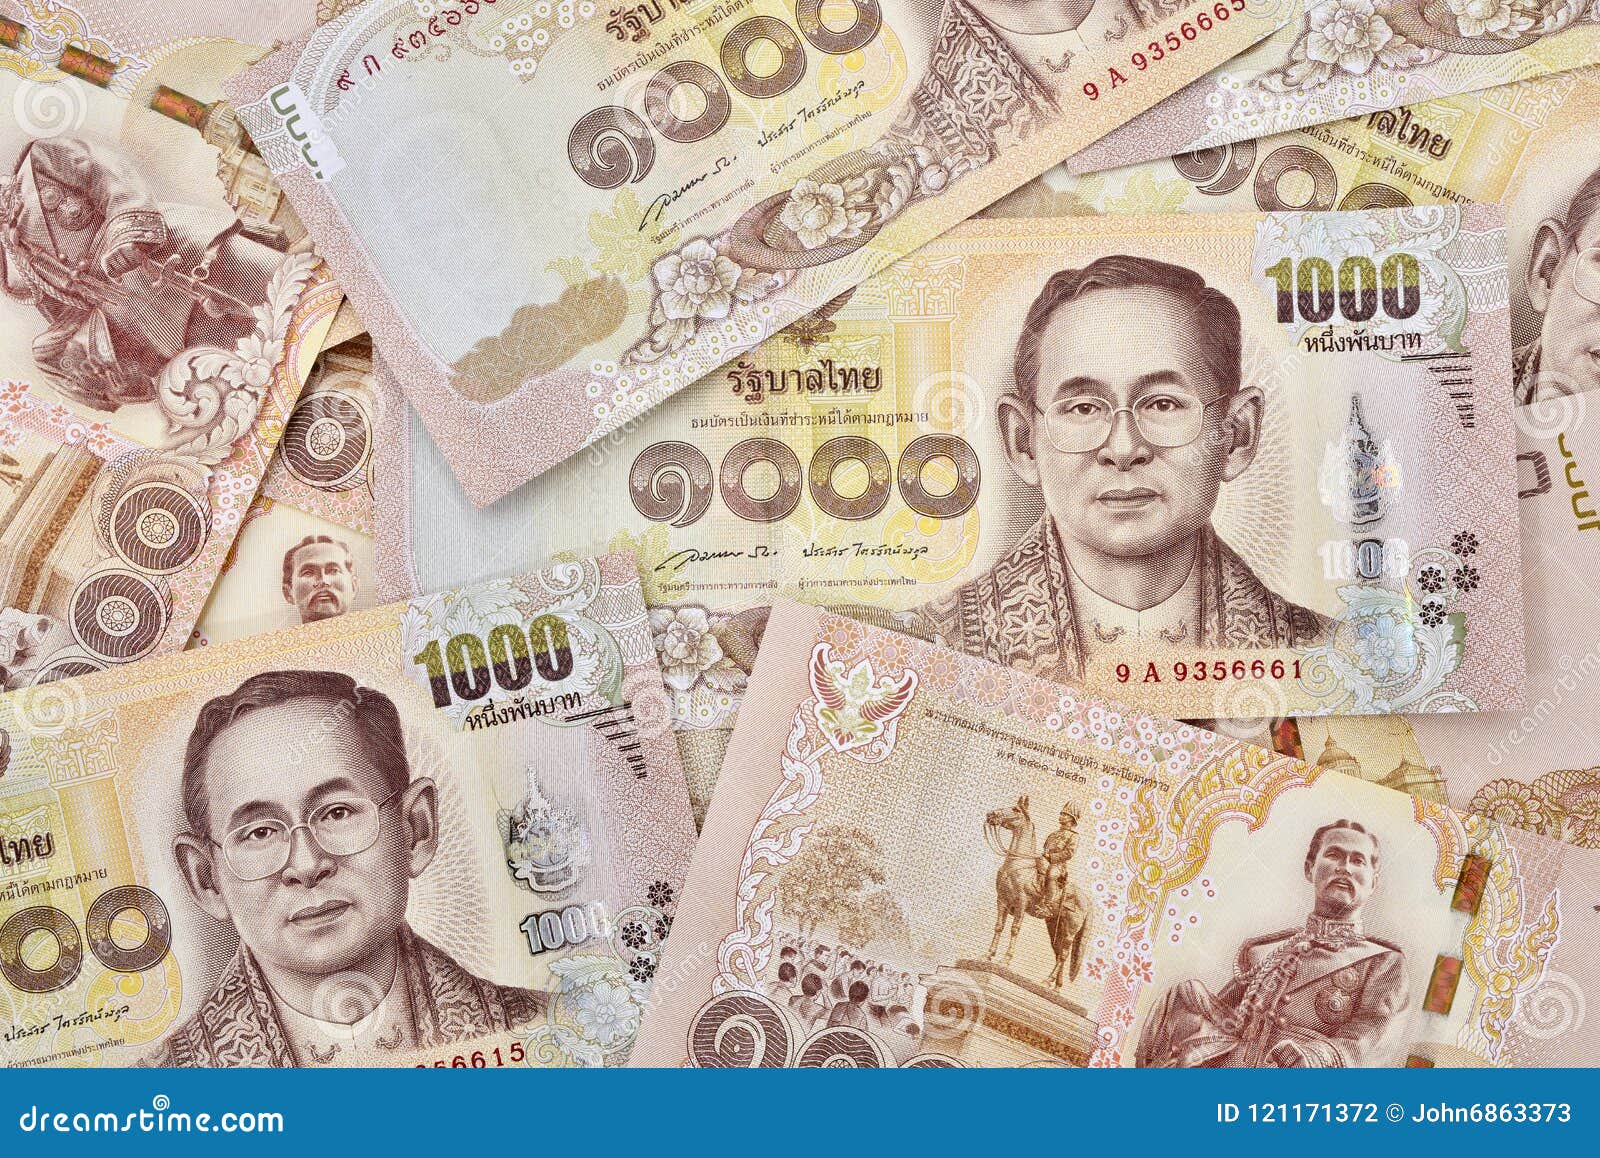 1000 бат сегодня. 1000 Бат банкнота. 1000 Бат фото. 1000 Тайских бат фото. Банкнота Тайланда 1000 бат.